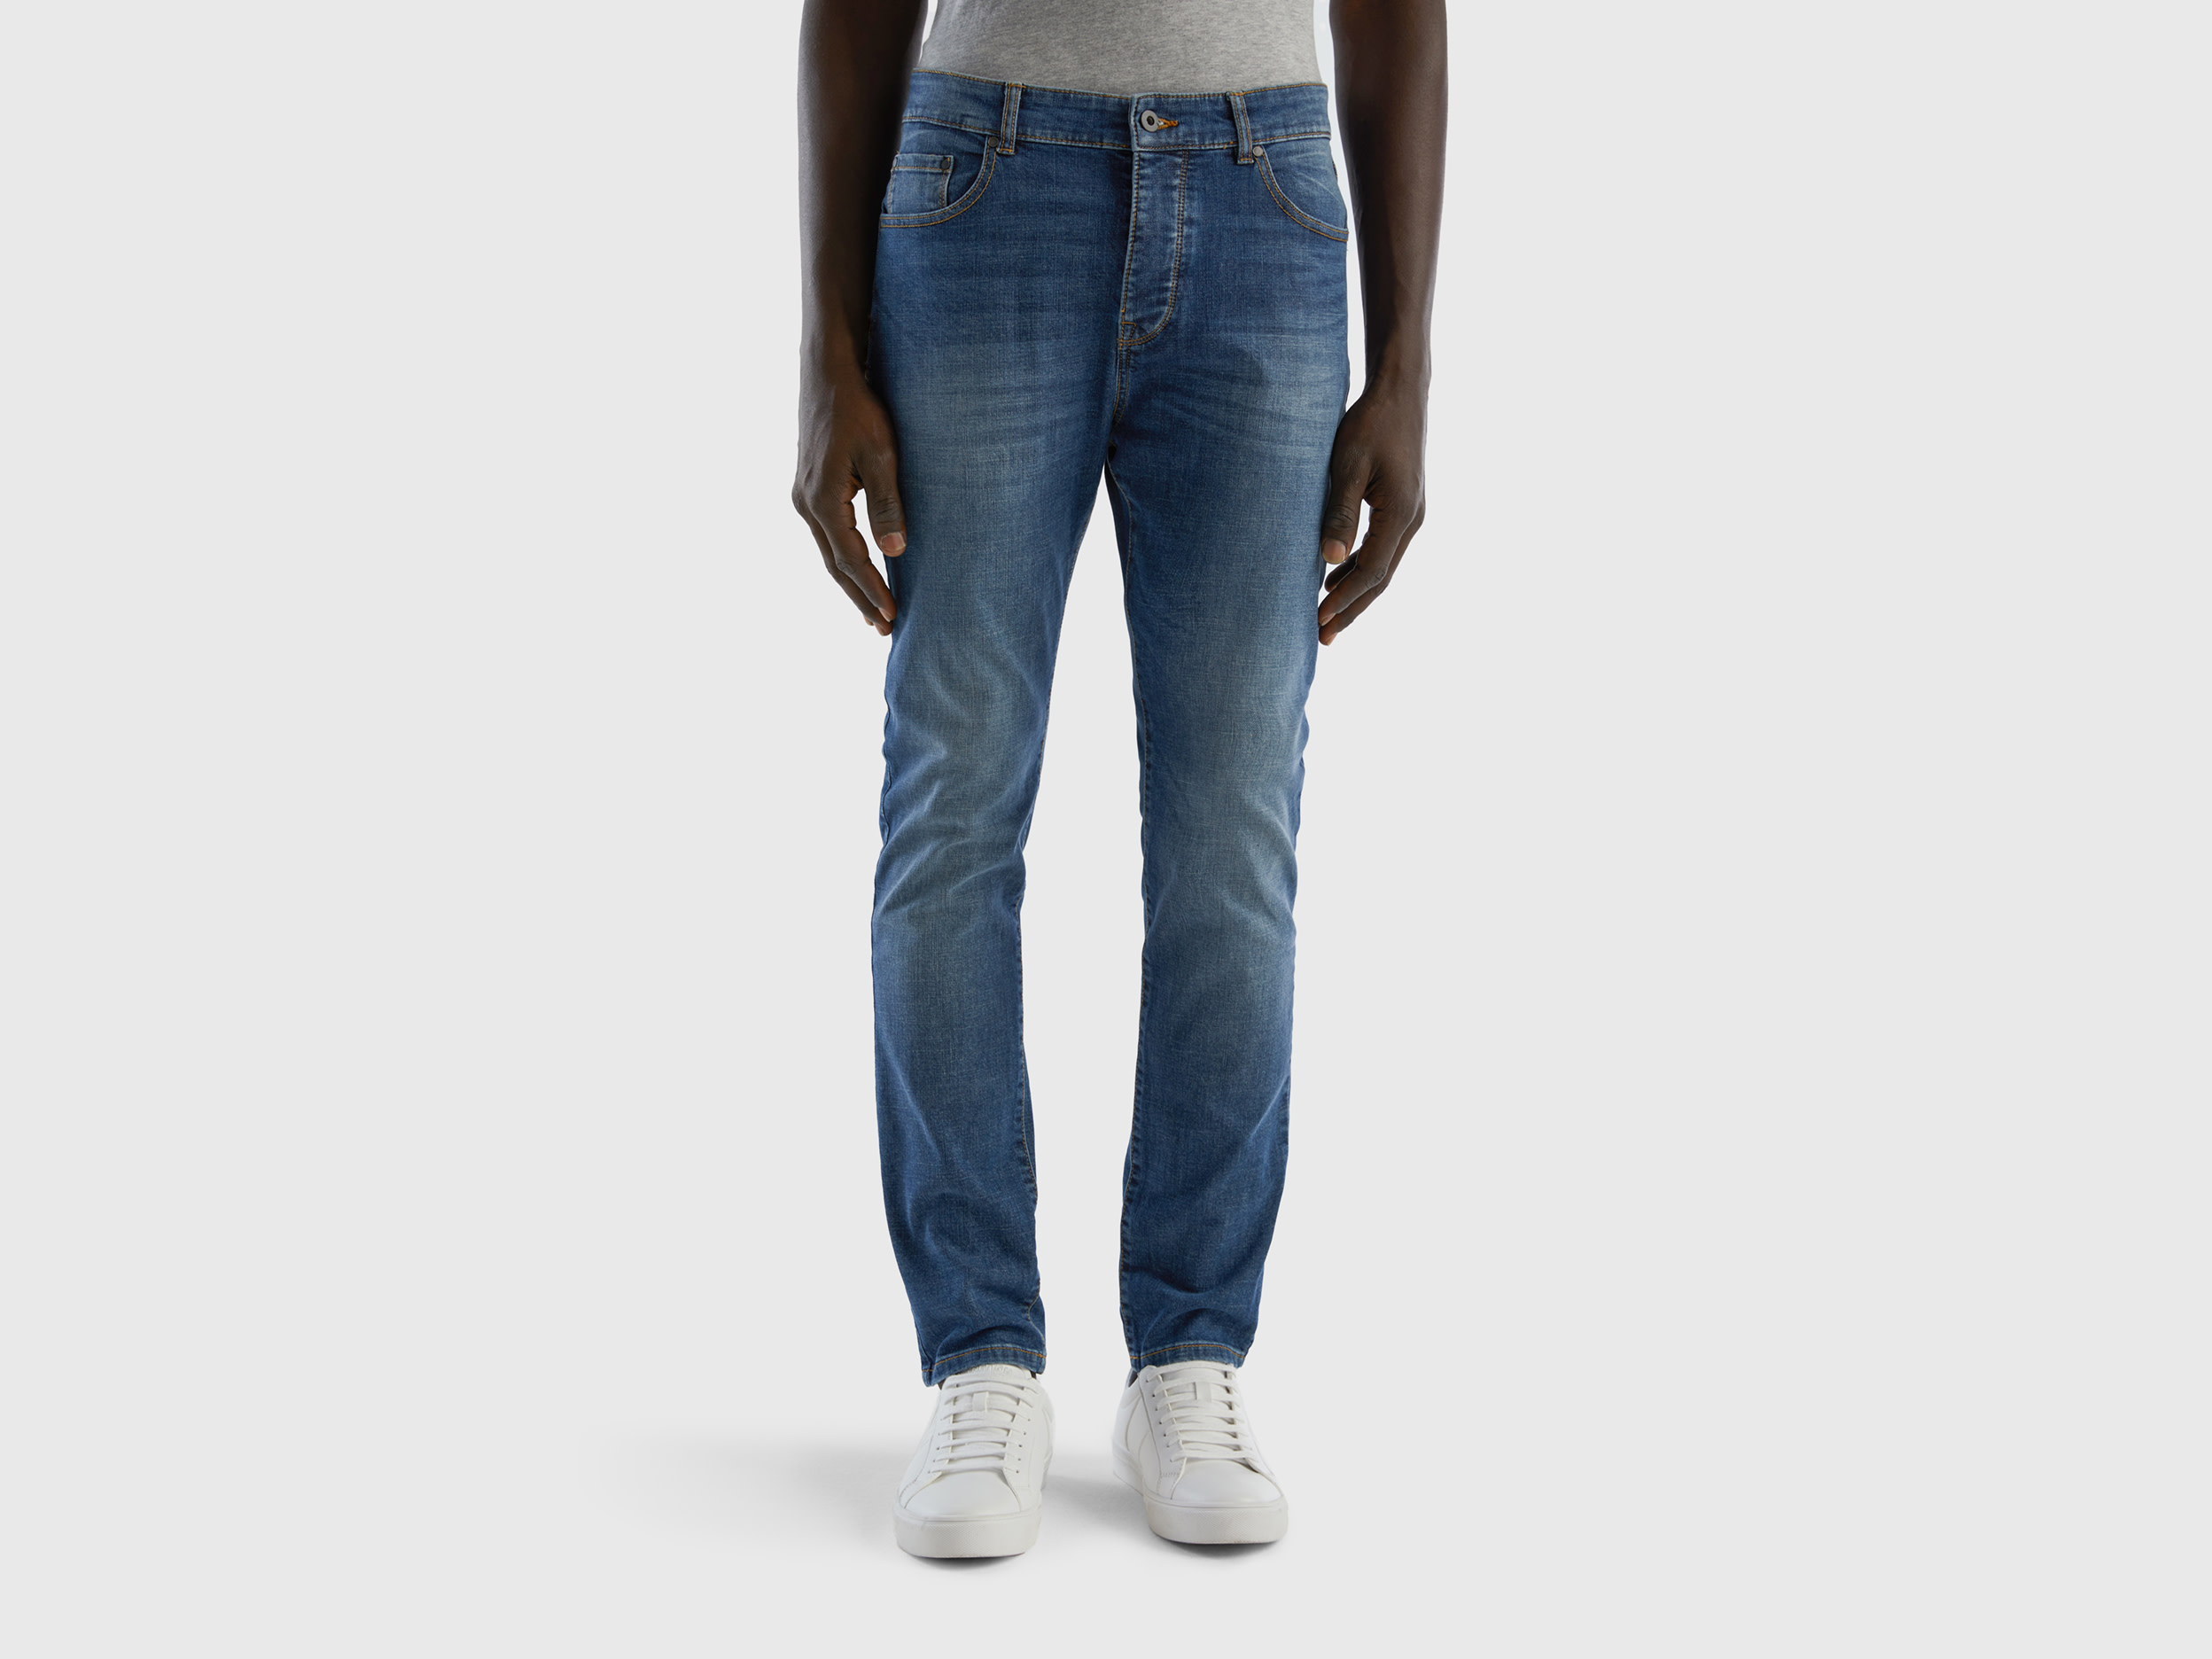 Benetton, Skinny Fit Jeans, size 33, Blue, Men